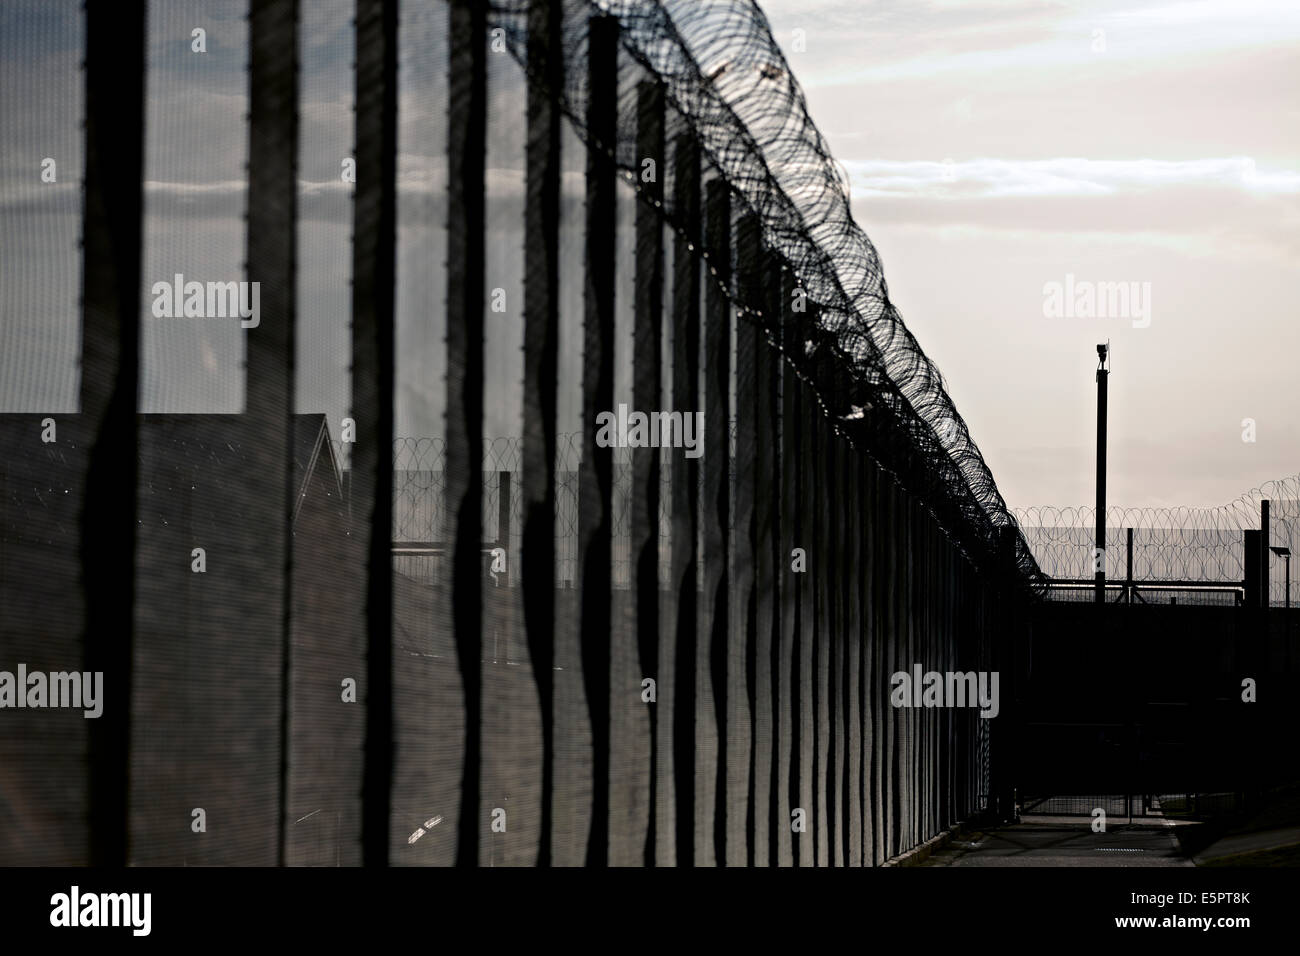 Des barrières de sécurité, de barbelés et de caméras de surveillance autour du périmètre d'une prison britannique. Banque D'Images